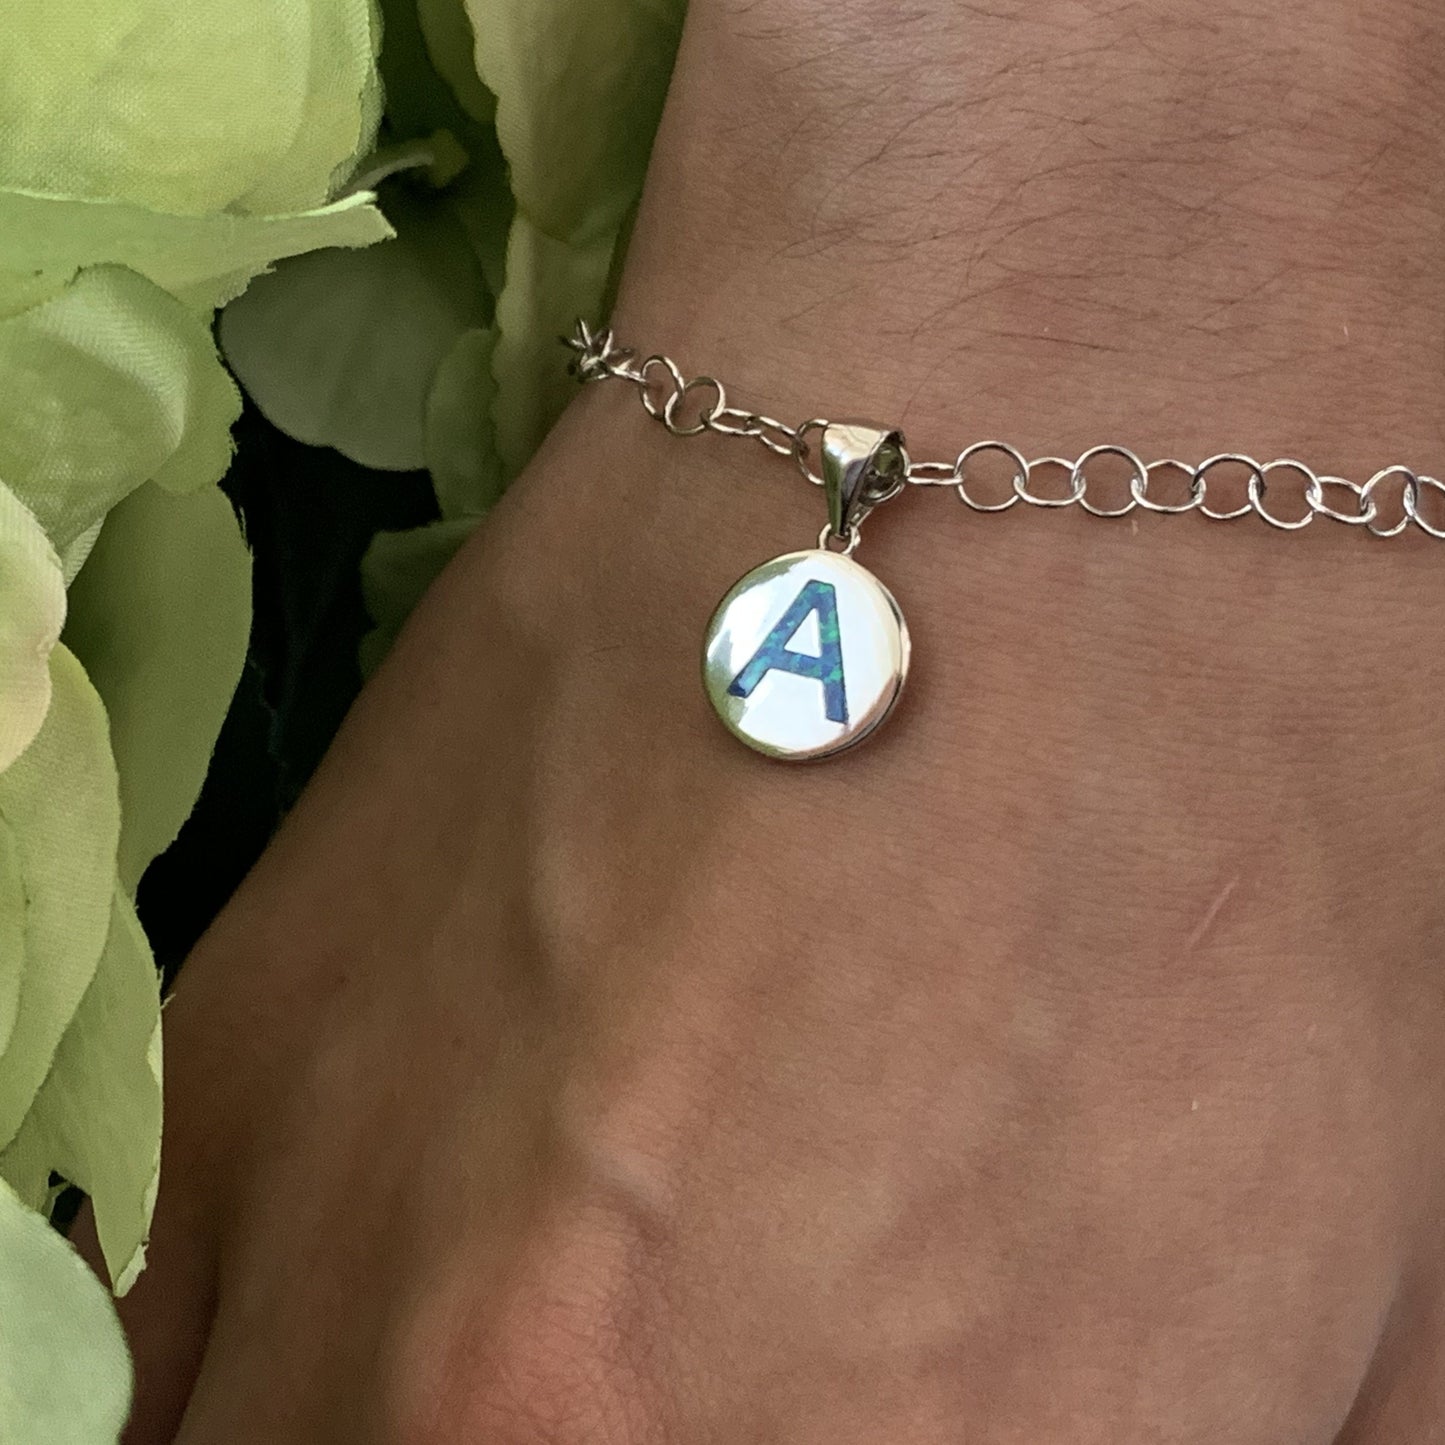 Opalite charm pendant on model shown as a charm bracelet.